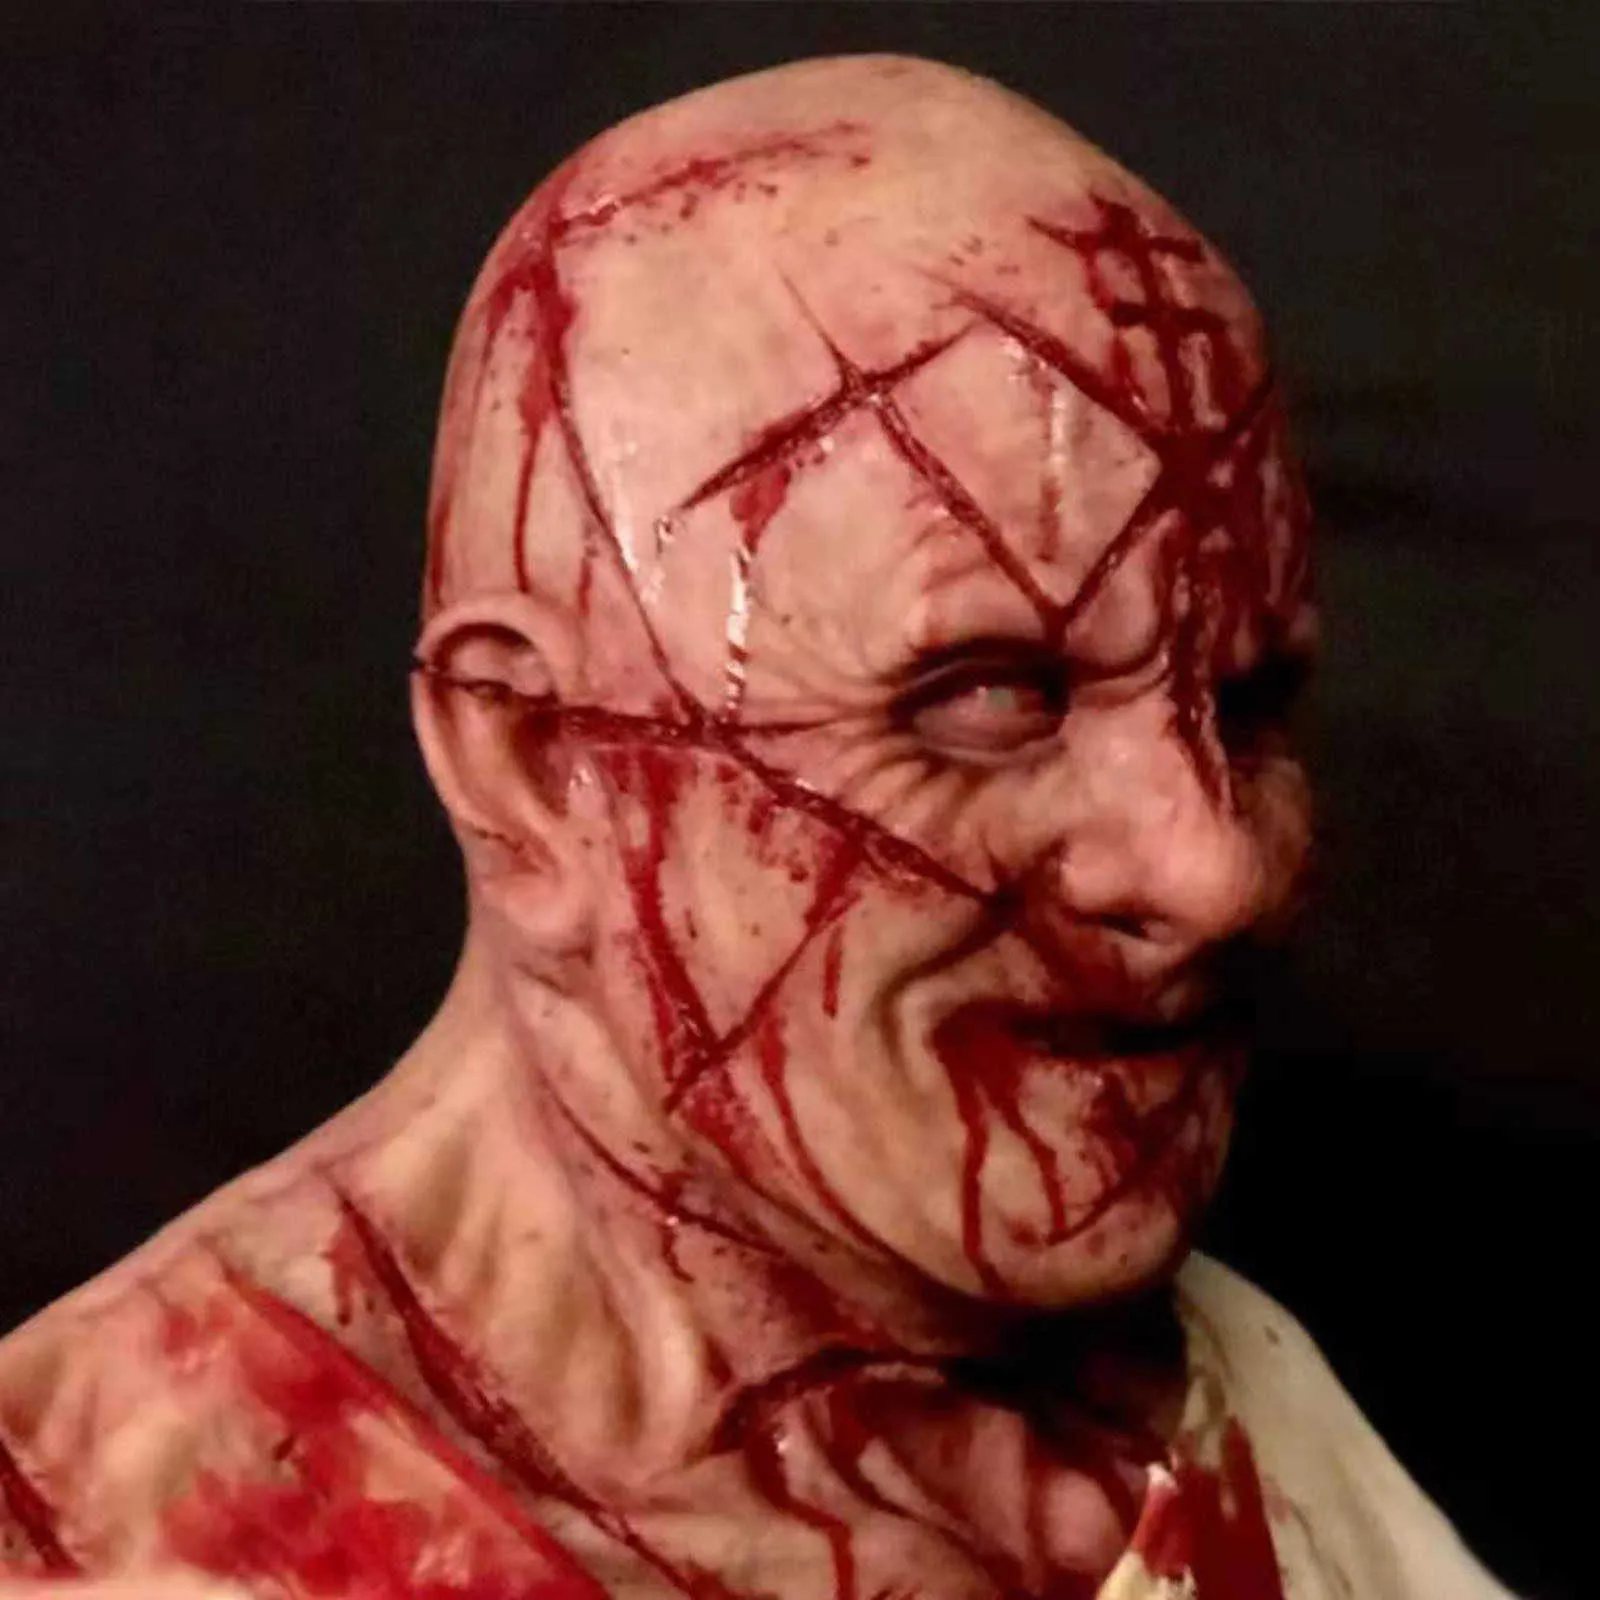 Skrämmande Bald Blood Scar Mask Skräck Blodig Huvudbonad 3D Realistisk Human Face Emulsion Latex Vuxna Andas Masque H0910